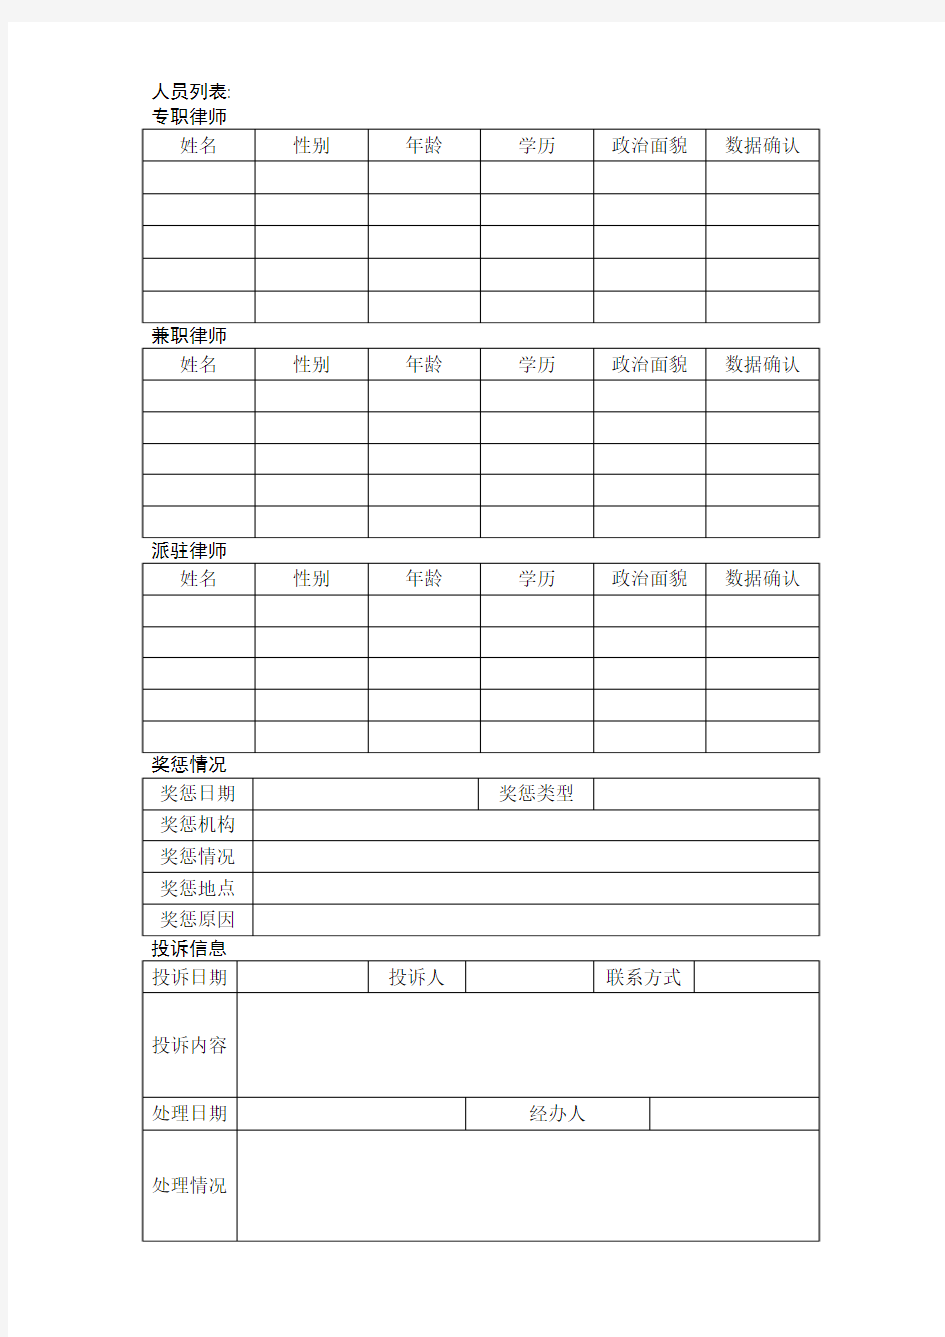 江苏省律师事务所基本信息填表报表